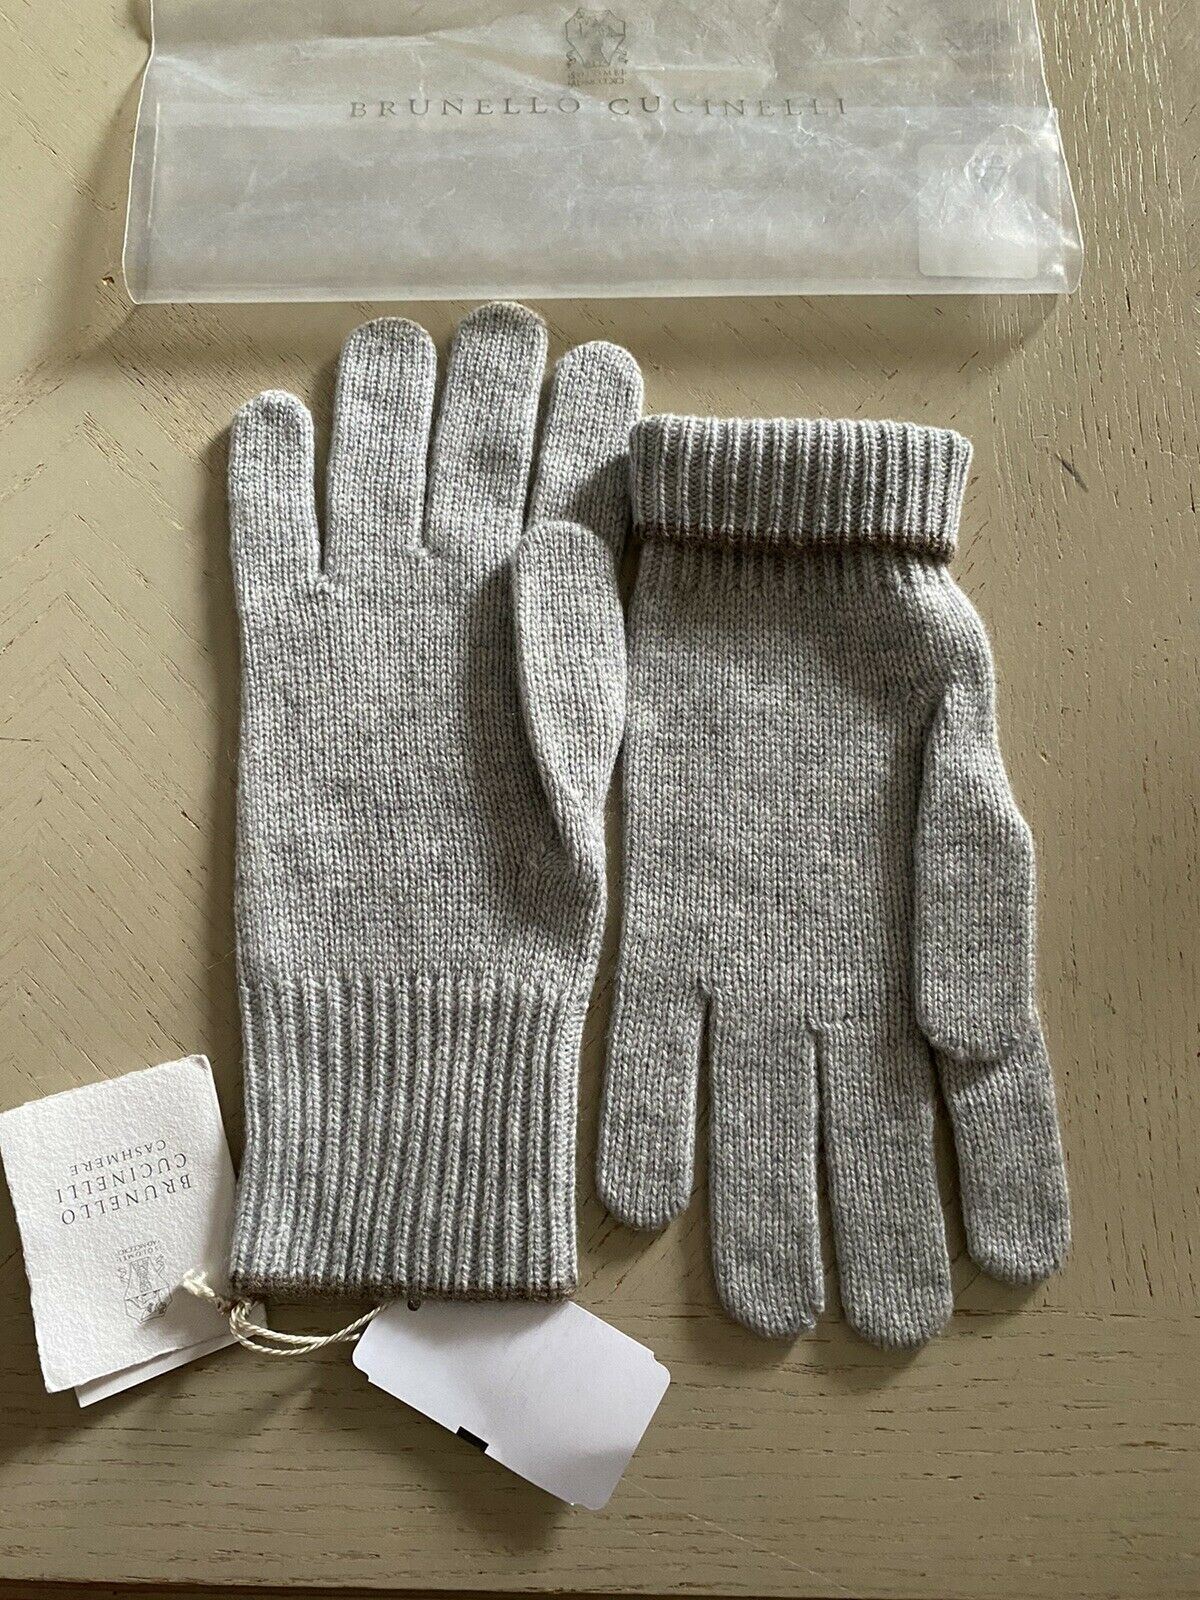 NWT $555 Brunello Cucinelli Женские кашемировые перчатки в рубчик серого цвета, размер L, Италия